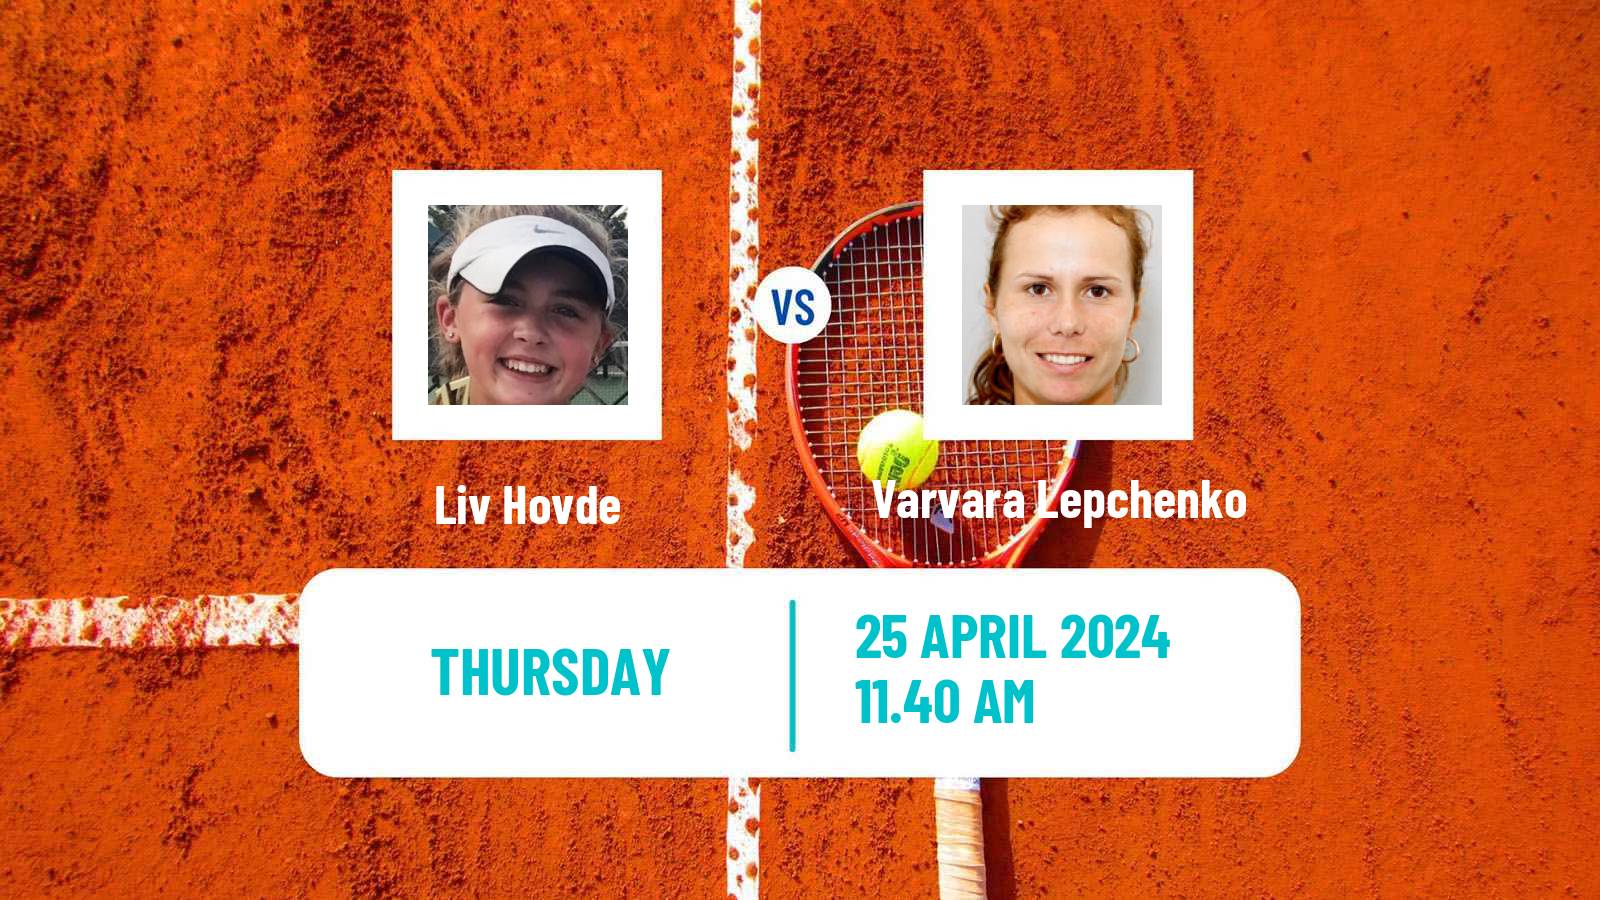 Tennis ITF W75 Charlottesville Va Women Liv Hovde - Varvara Lepchenko